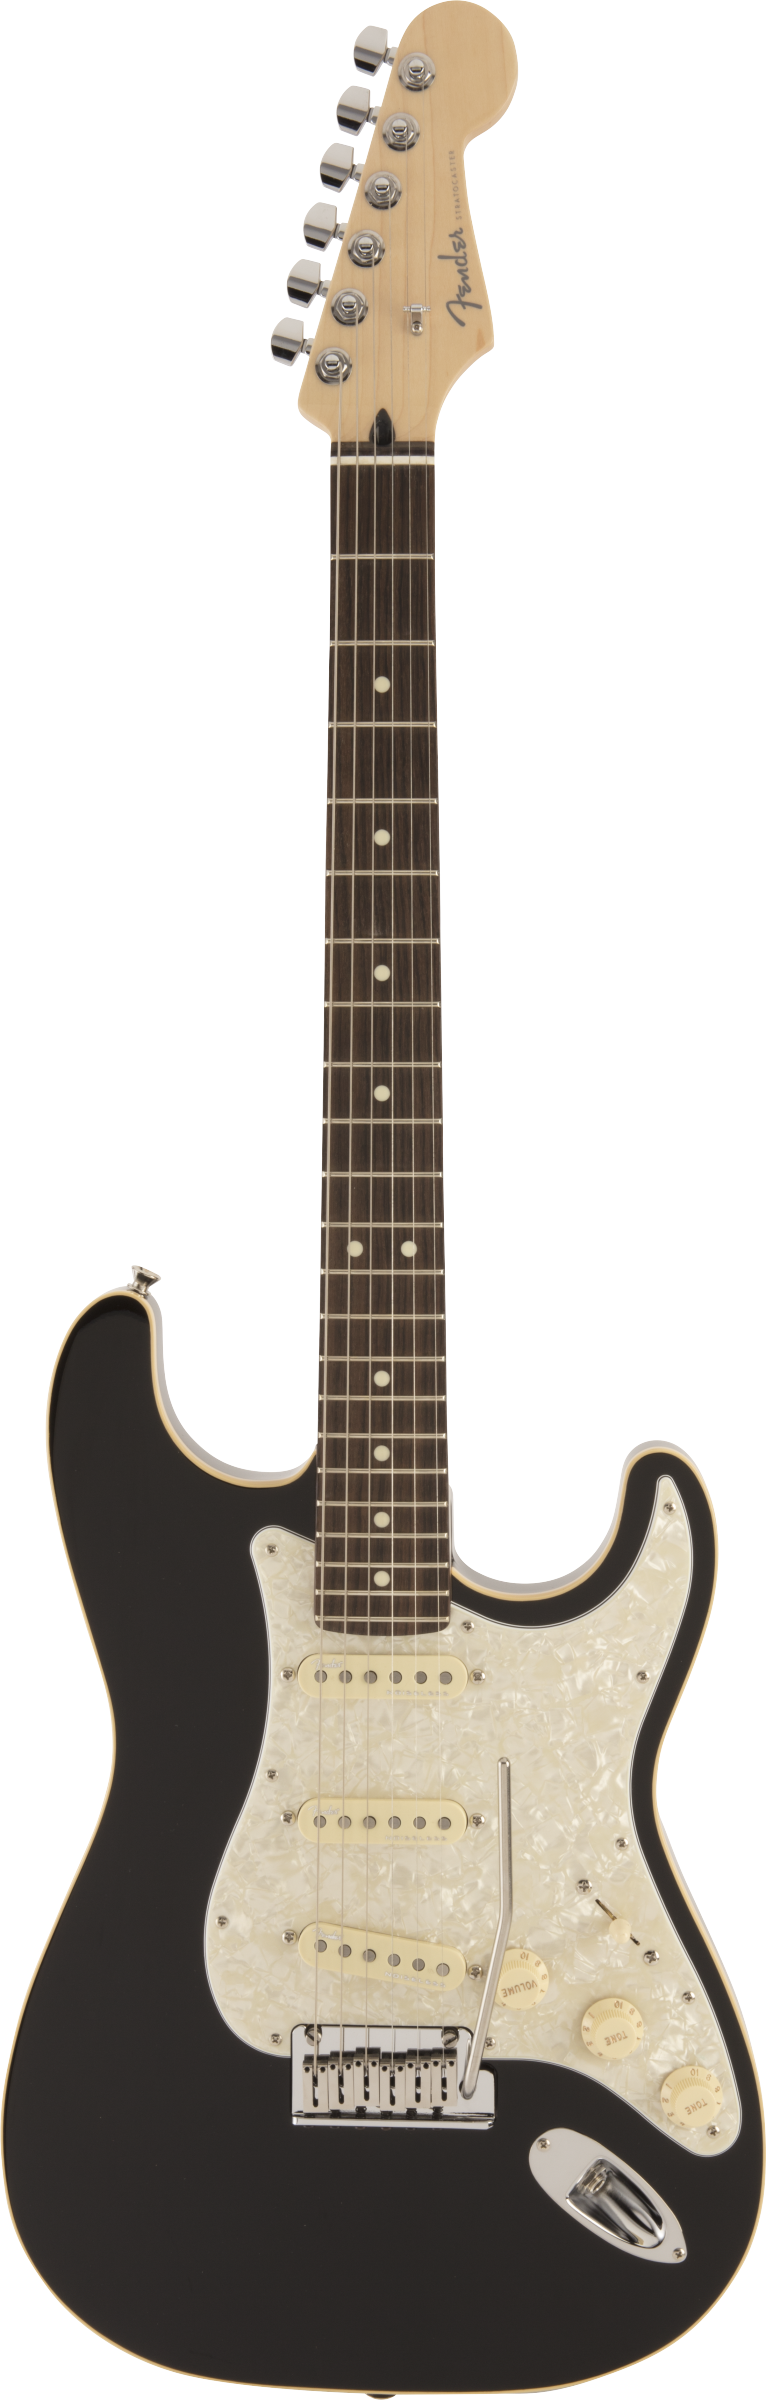 国産●Fender Stratocaster Made in JAPAN フェンダーストラトキャスター エレキギター ブラックUシリアル● フェンダー